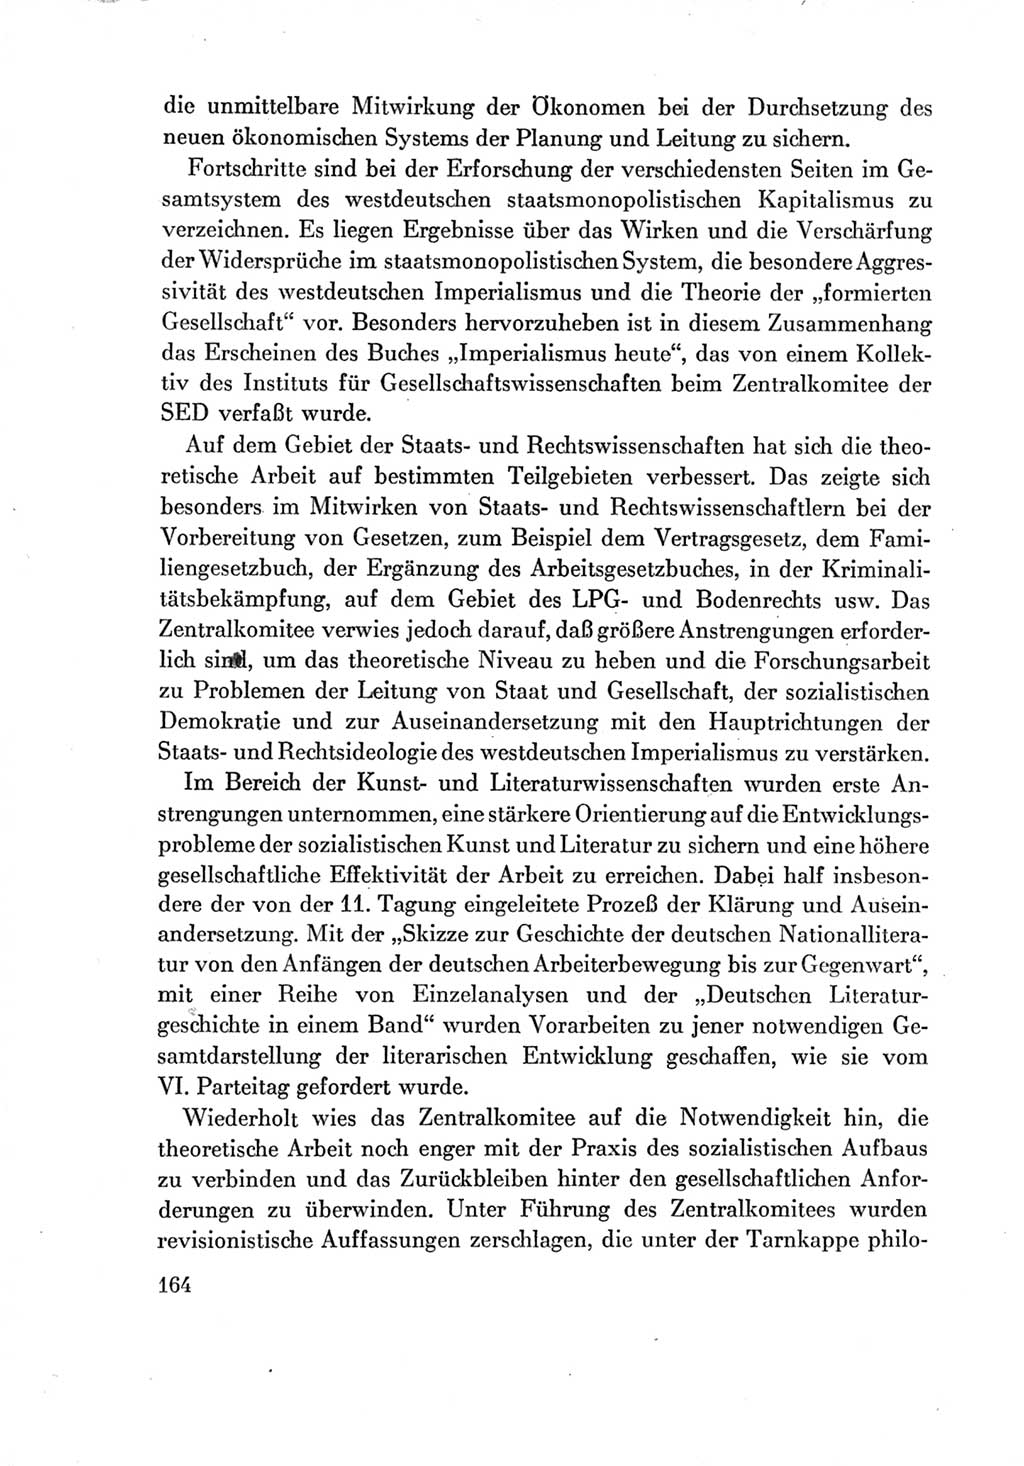 Protokoll der Verhandlungen des Ⅶ. Parteitages der Sozialistischen Einheitspartei Deutschlands (SED) [Deutsche Demokratische Republik (DDR)] 1967, Band Ⅳ, Seite 164 (Prot. Verh. Ⅶ. PT SED DDR 1967, Bd. Ⅳ, S. 164)